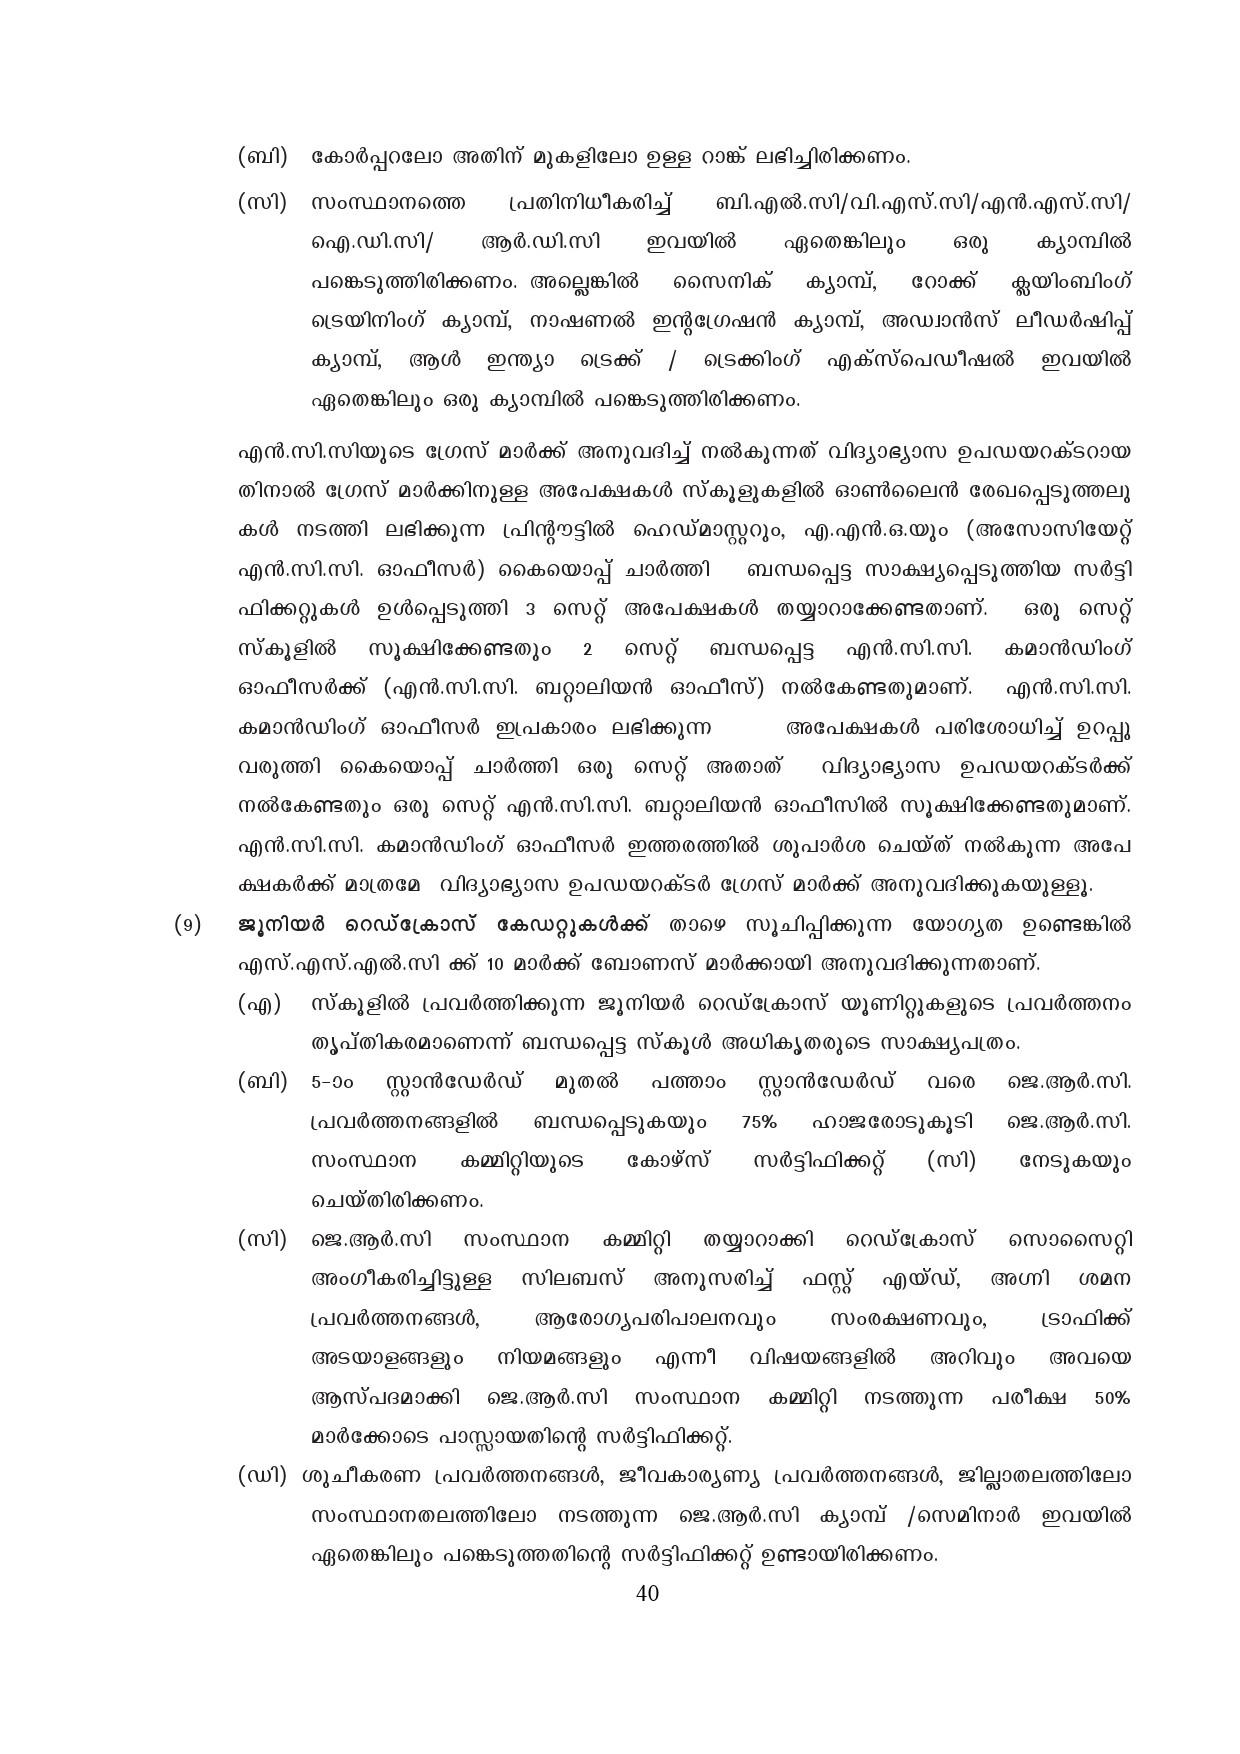 Kerala SSLC Exam Result 2019 - Notification Image 40